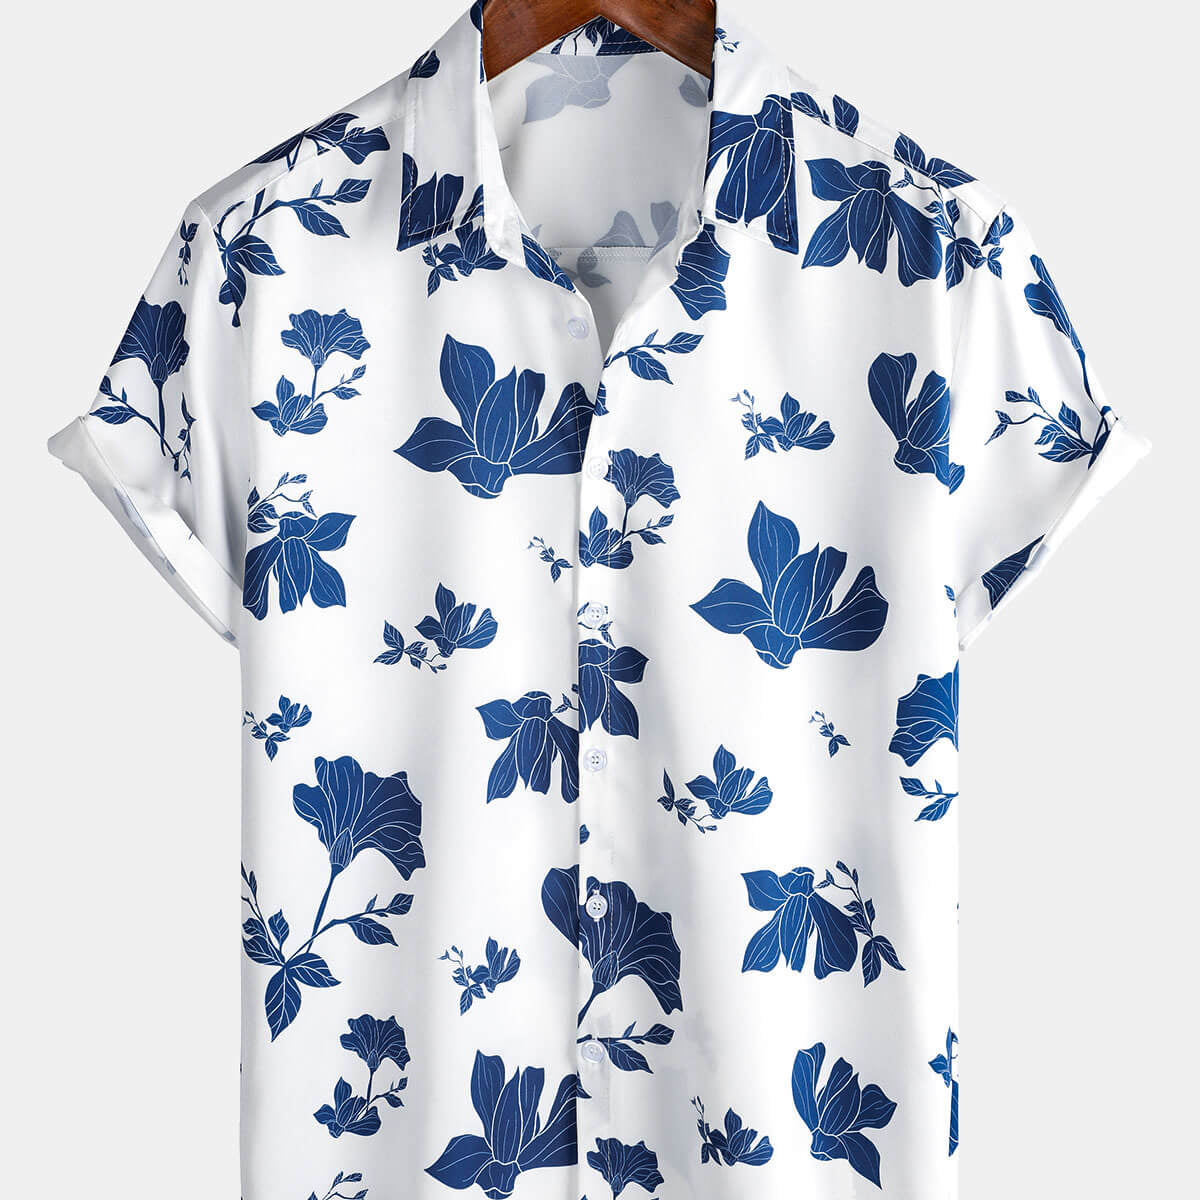 Men's Summer Floral Print Casual Beach Button Up Short Sleeve Shirt